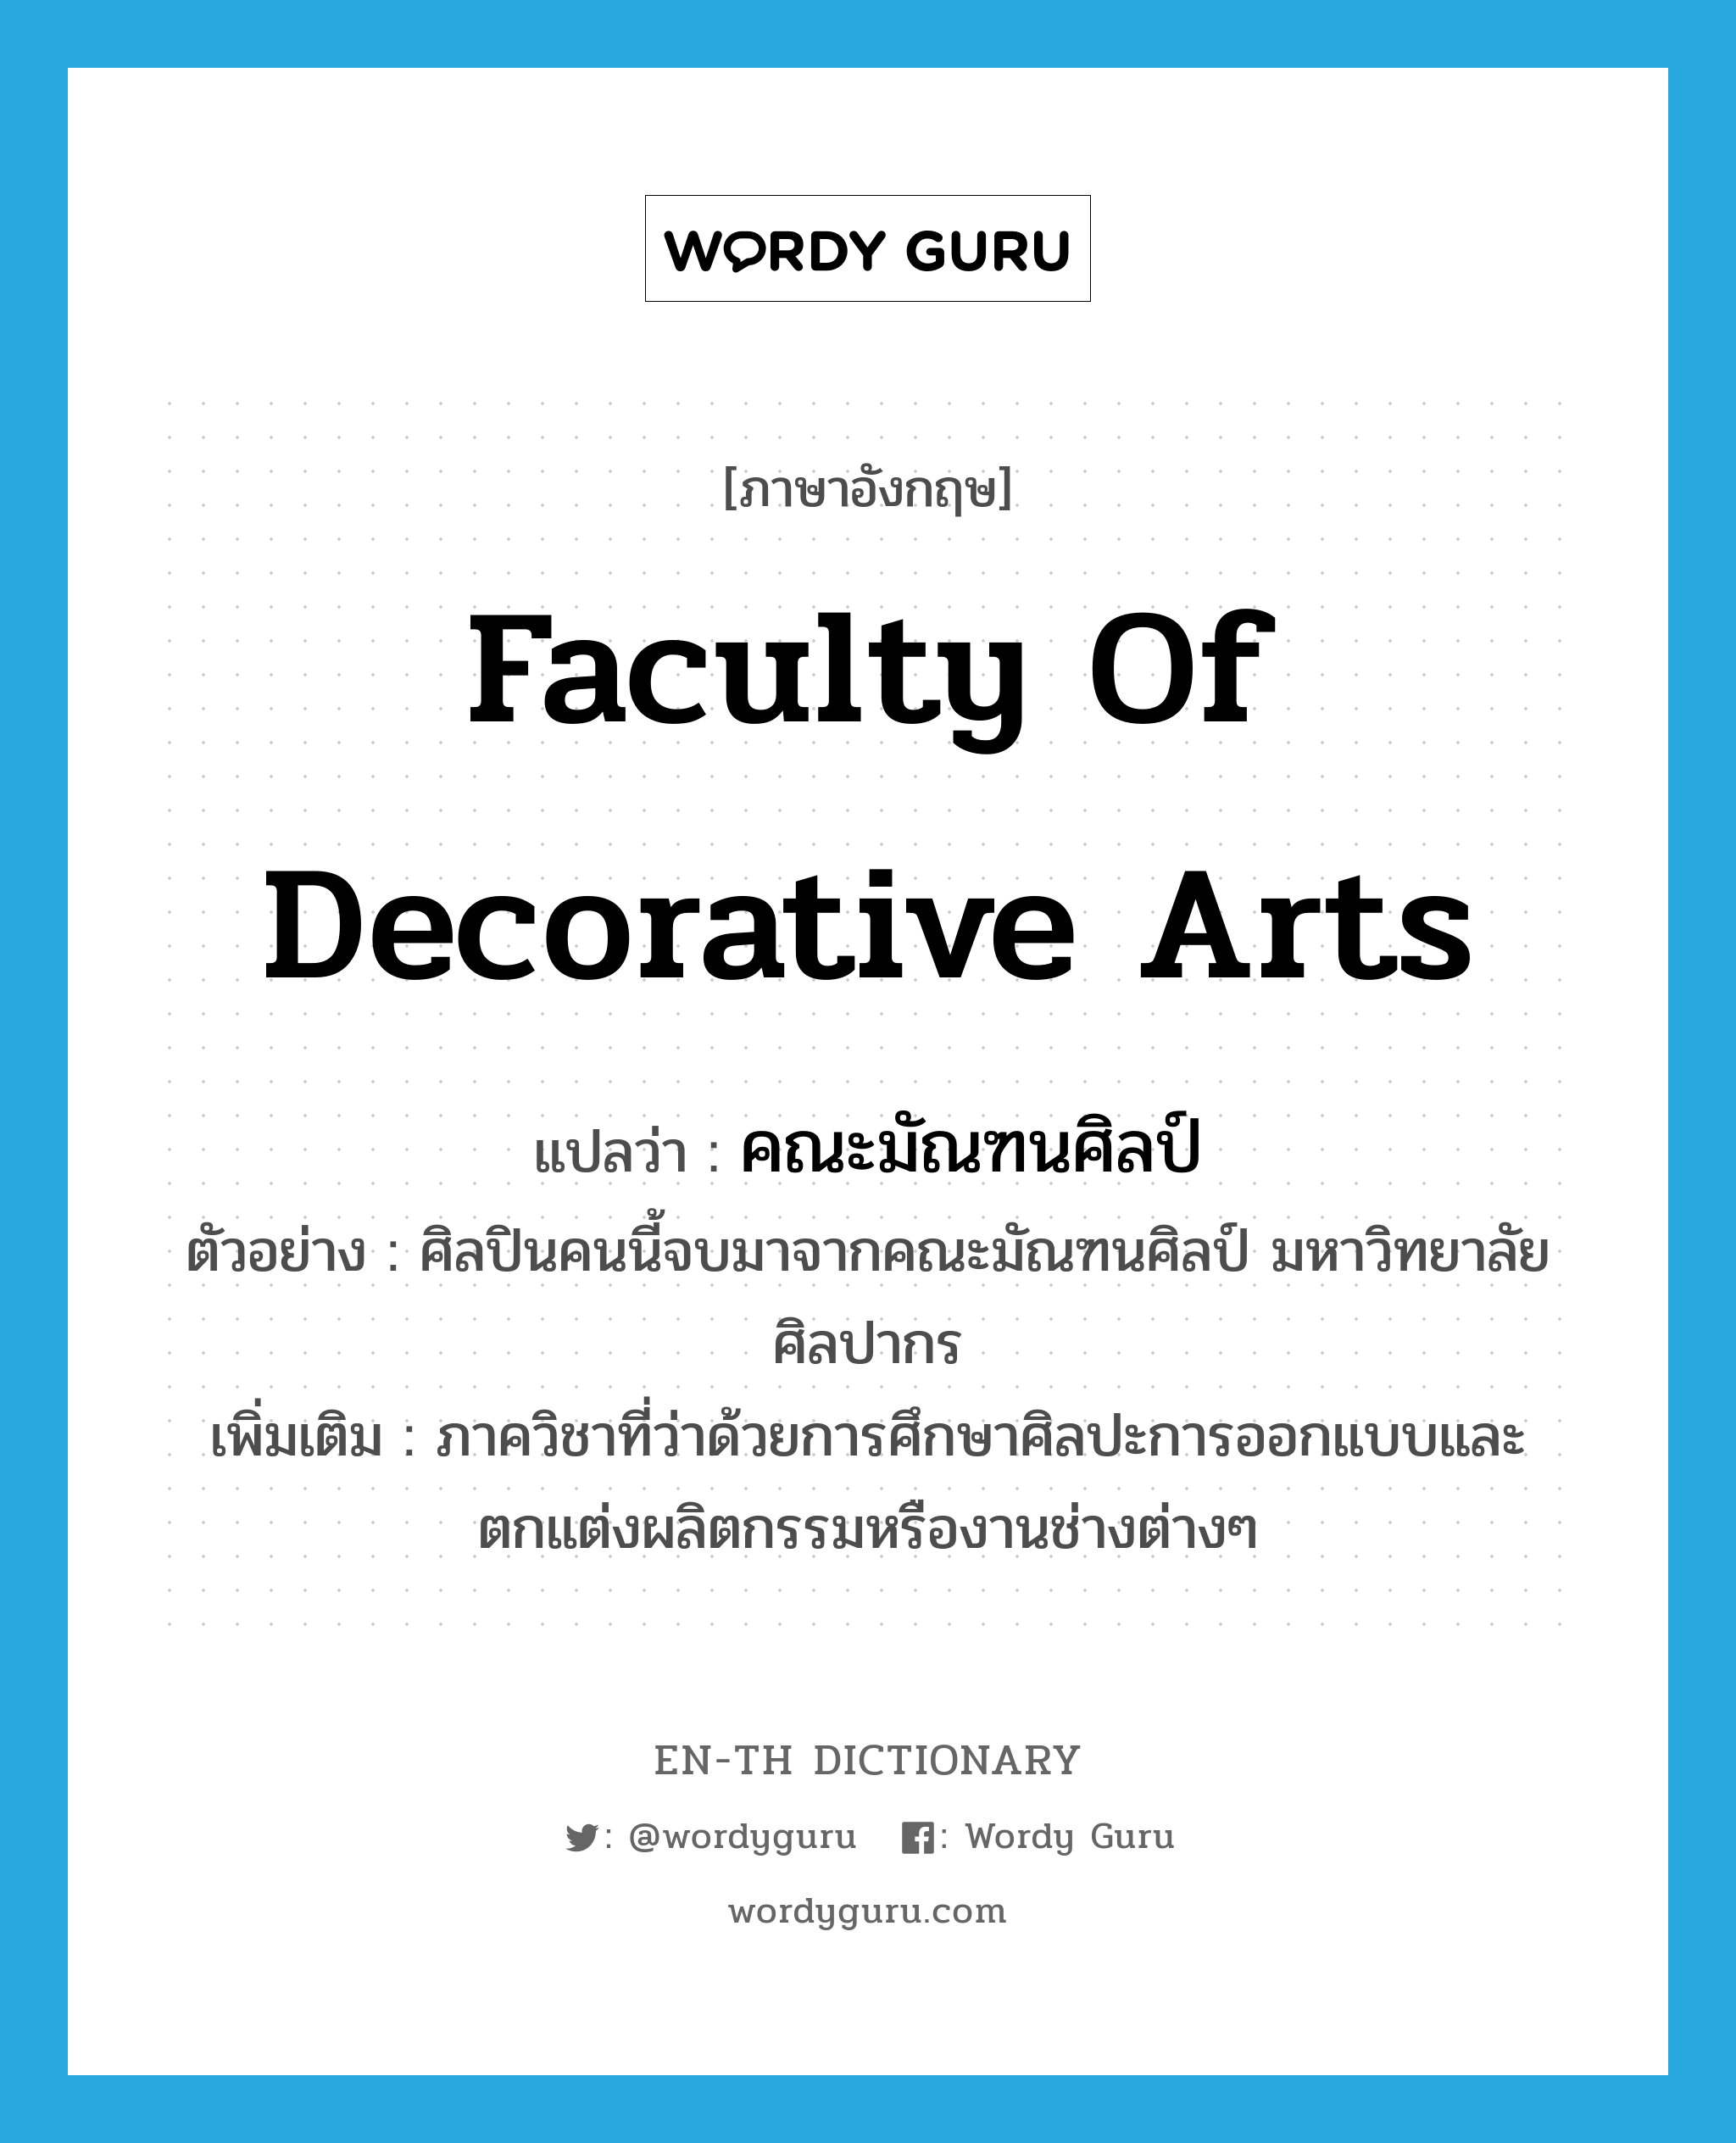 Faculty of Decorative Arts แปลว่า?, คำศัพท์ภาษาอังกฤษ Faculty of Decorative Arts แปลว่า คณะมัณฑนศิลป์ ประเภท N ตัวอย่าง ศิลปินคนนี้จบมาจากคณะมัณฑนศิลป์ มหาวิทยาลัยศิลปากร เพิ่มเติม ภาควิชาที่ว่าด้วยการศึกษาศิลปะการออกแบบและตกแต่งผลิตกรรมหรืองานช่างต่างๆ หมวด N